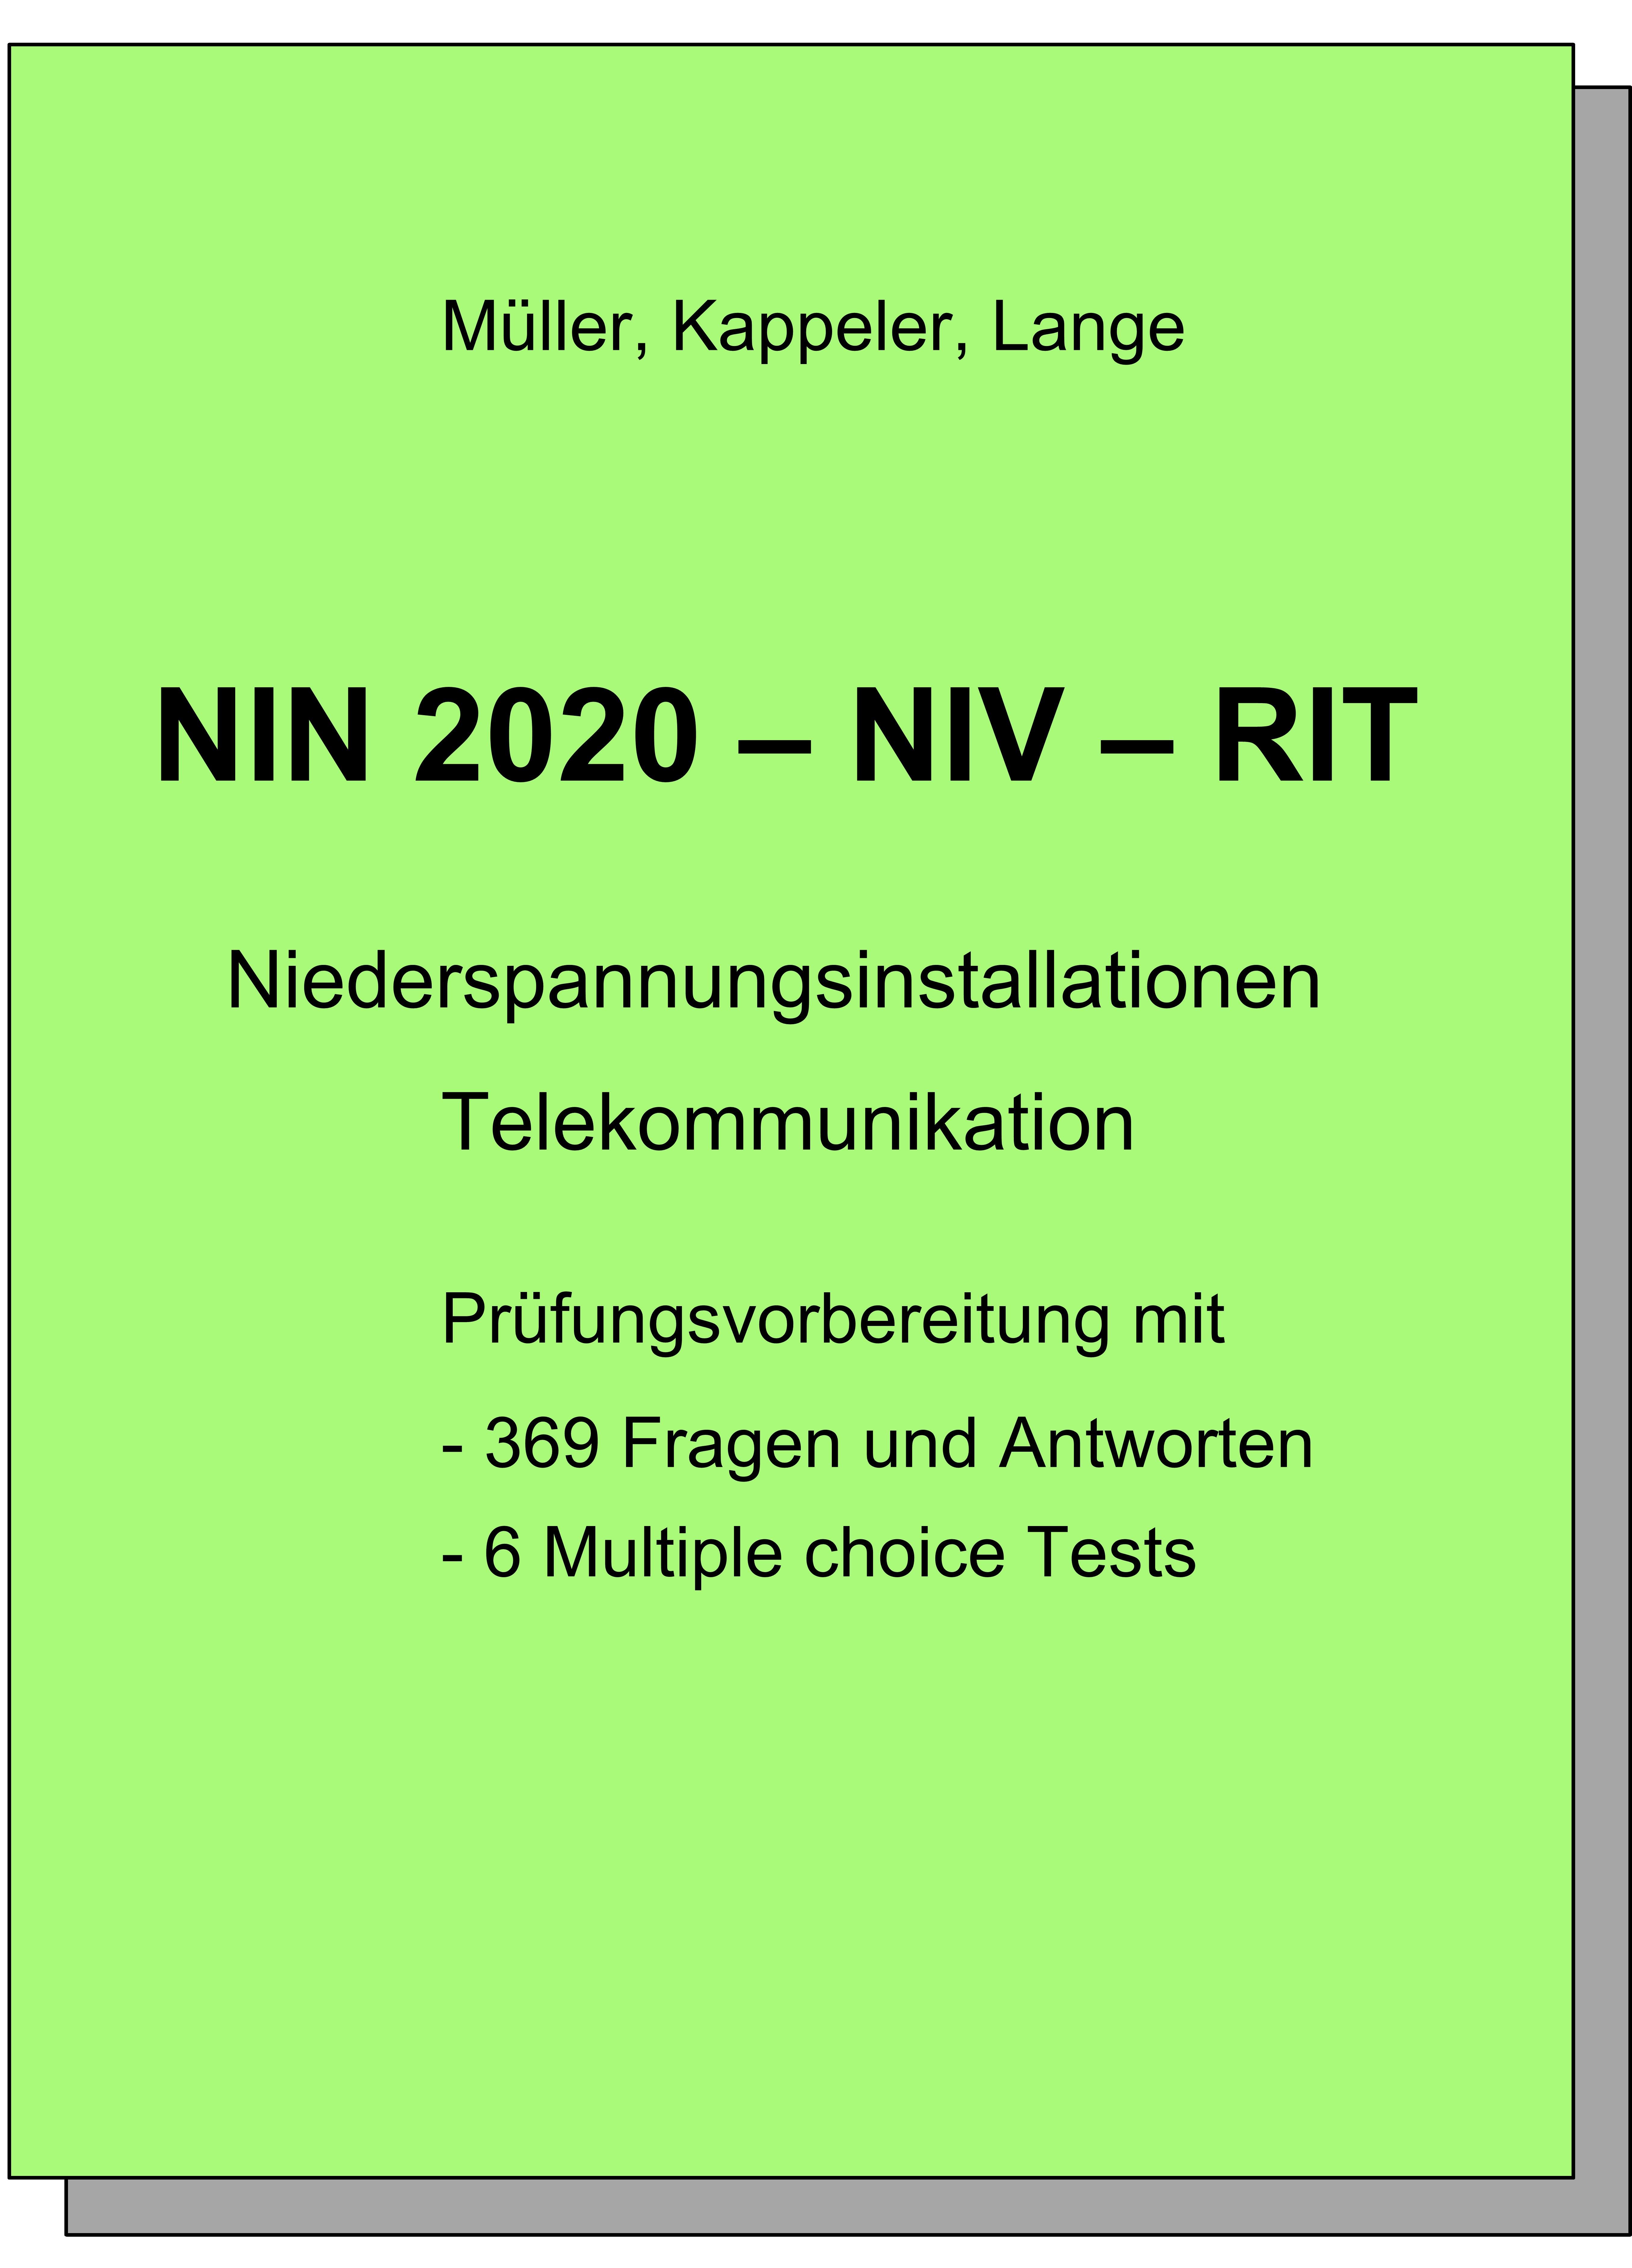 NIN 2015 - NIV - RIT